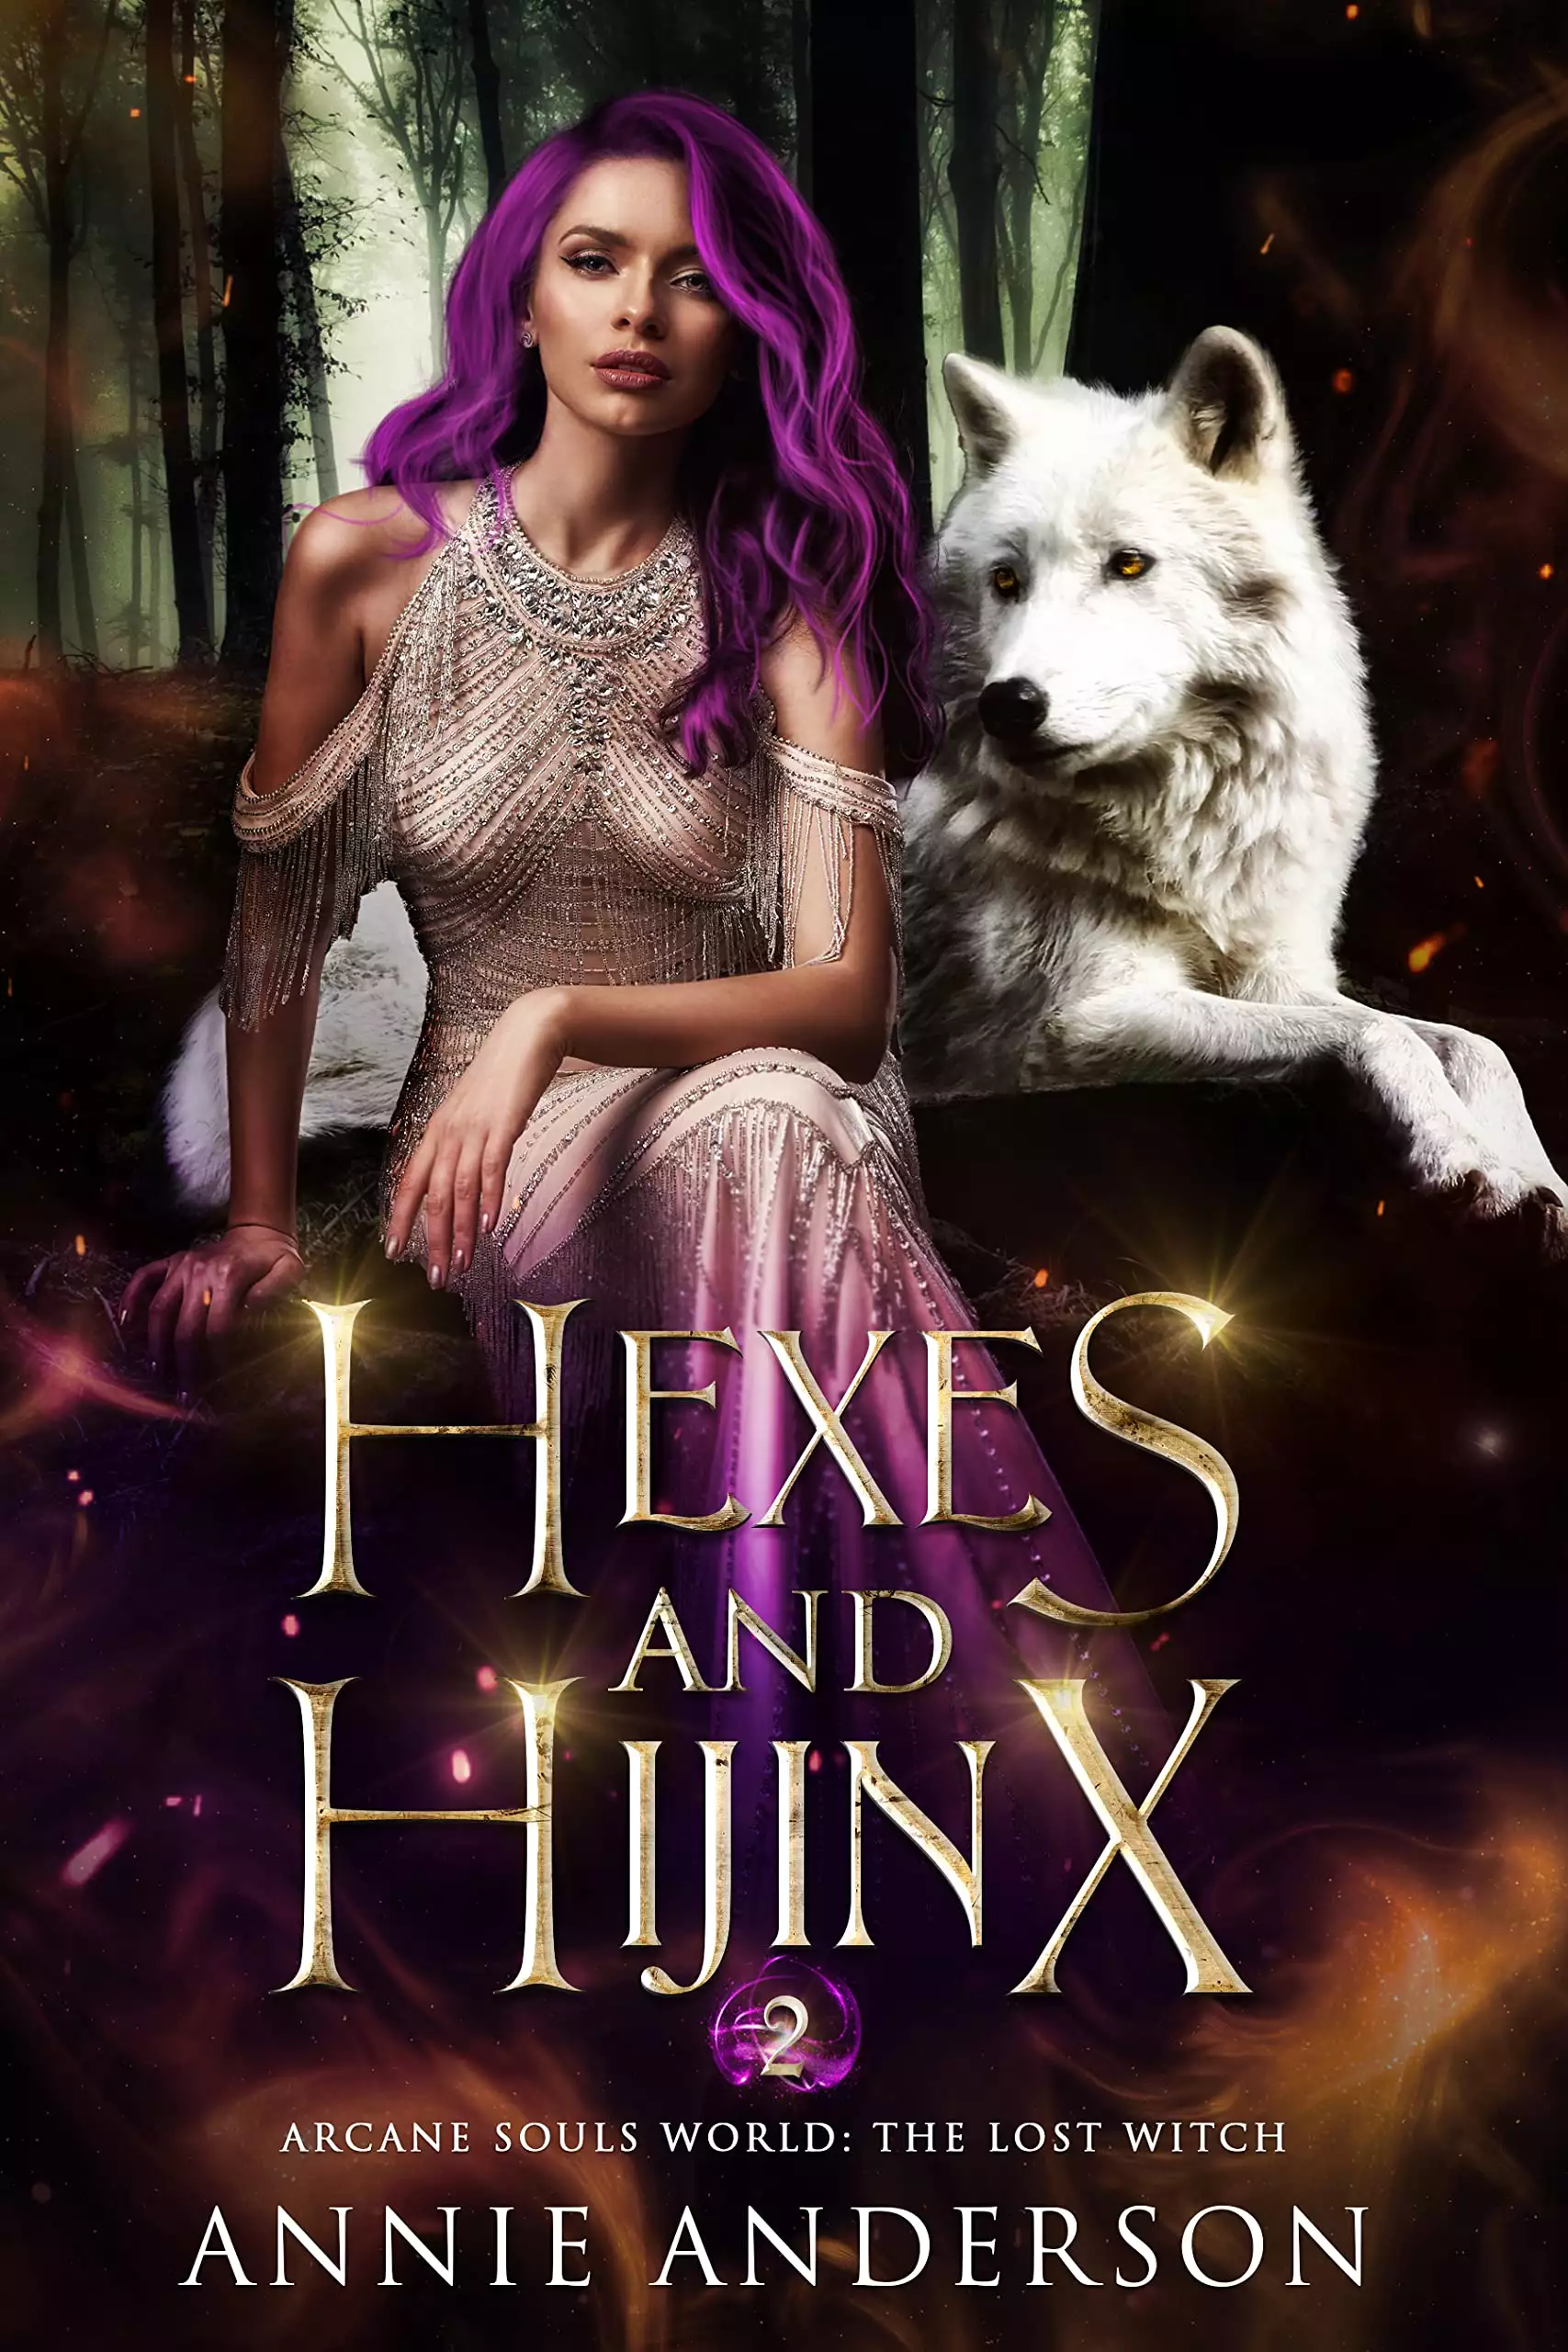 Hexes and Hijinx